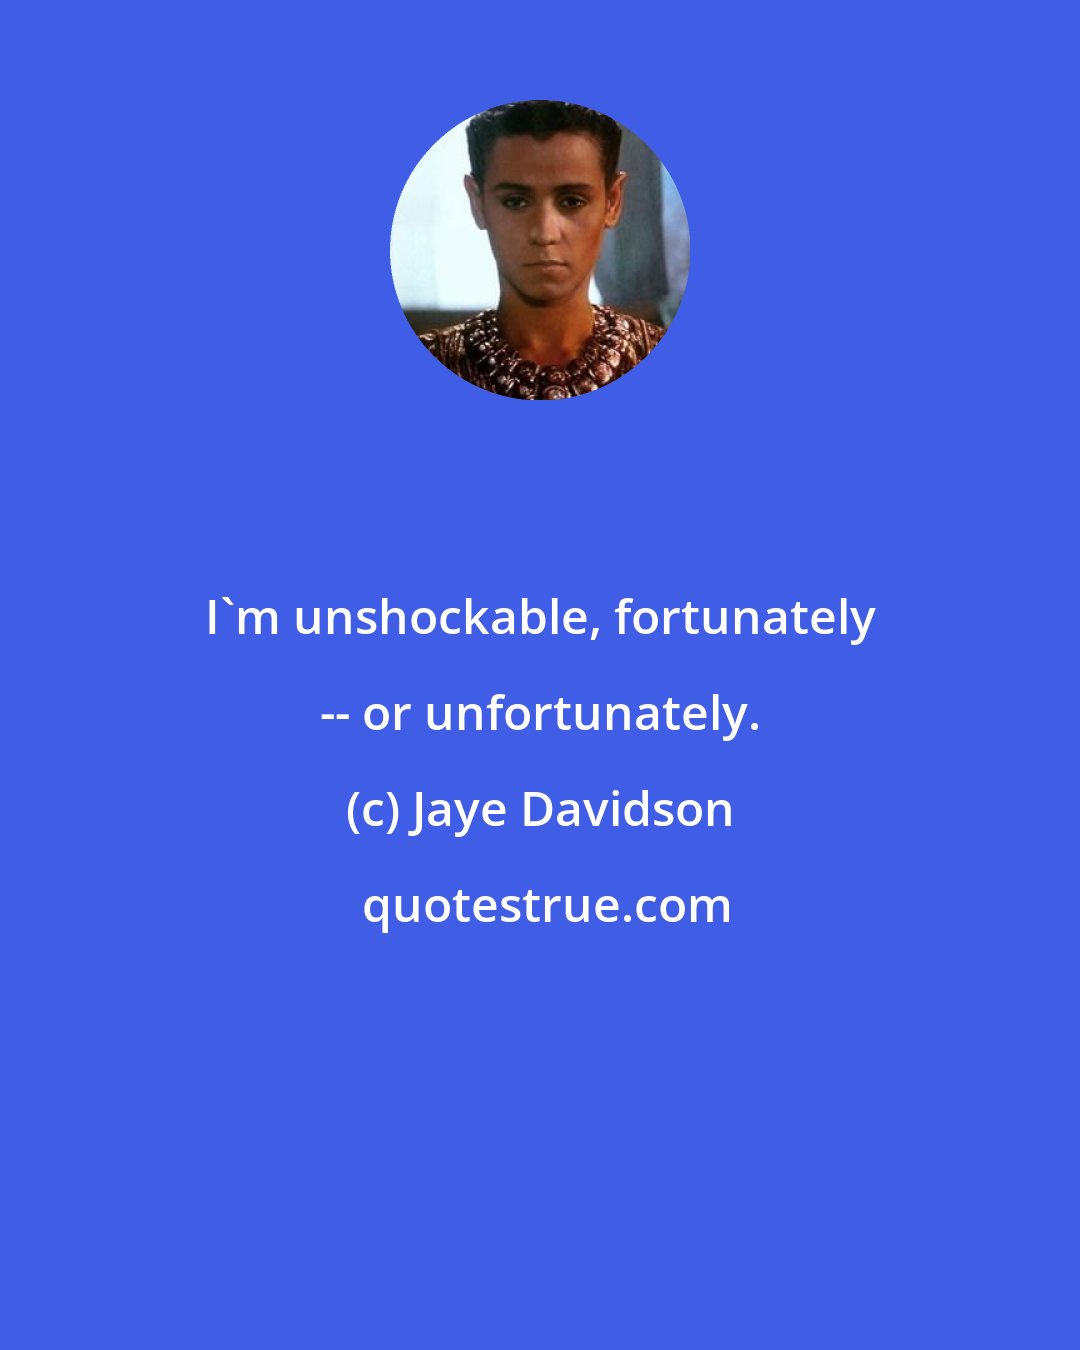 Jaye Davidson: I'm unshockable, fortunately -- or unfortunately.